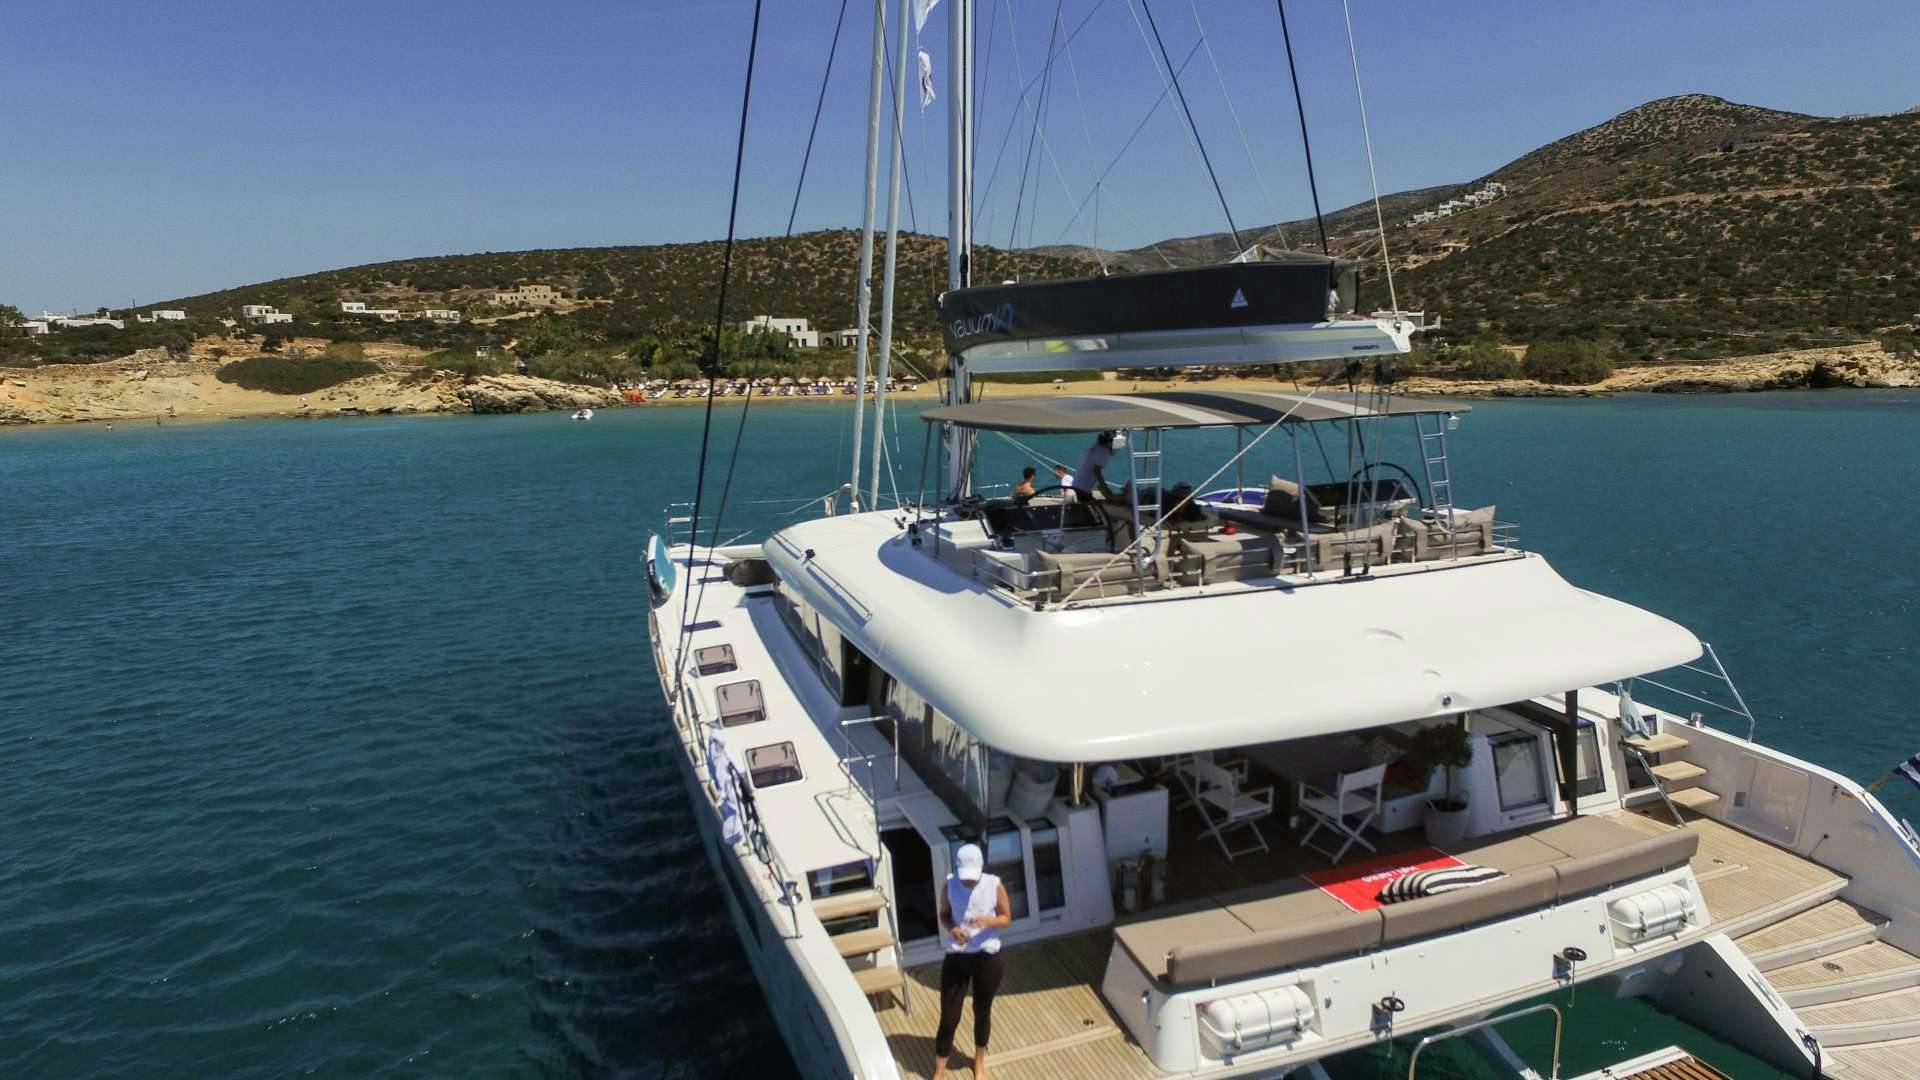 valium62 - Yacht Charter  La Trinite-sur-mer & Boat hire in Greece 1